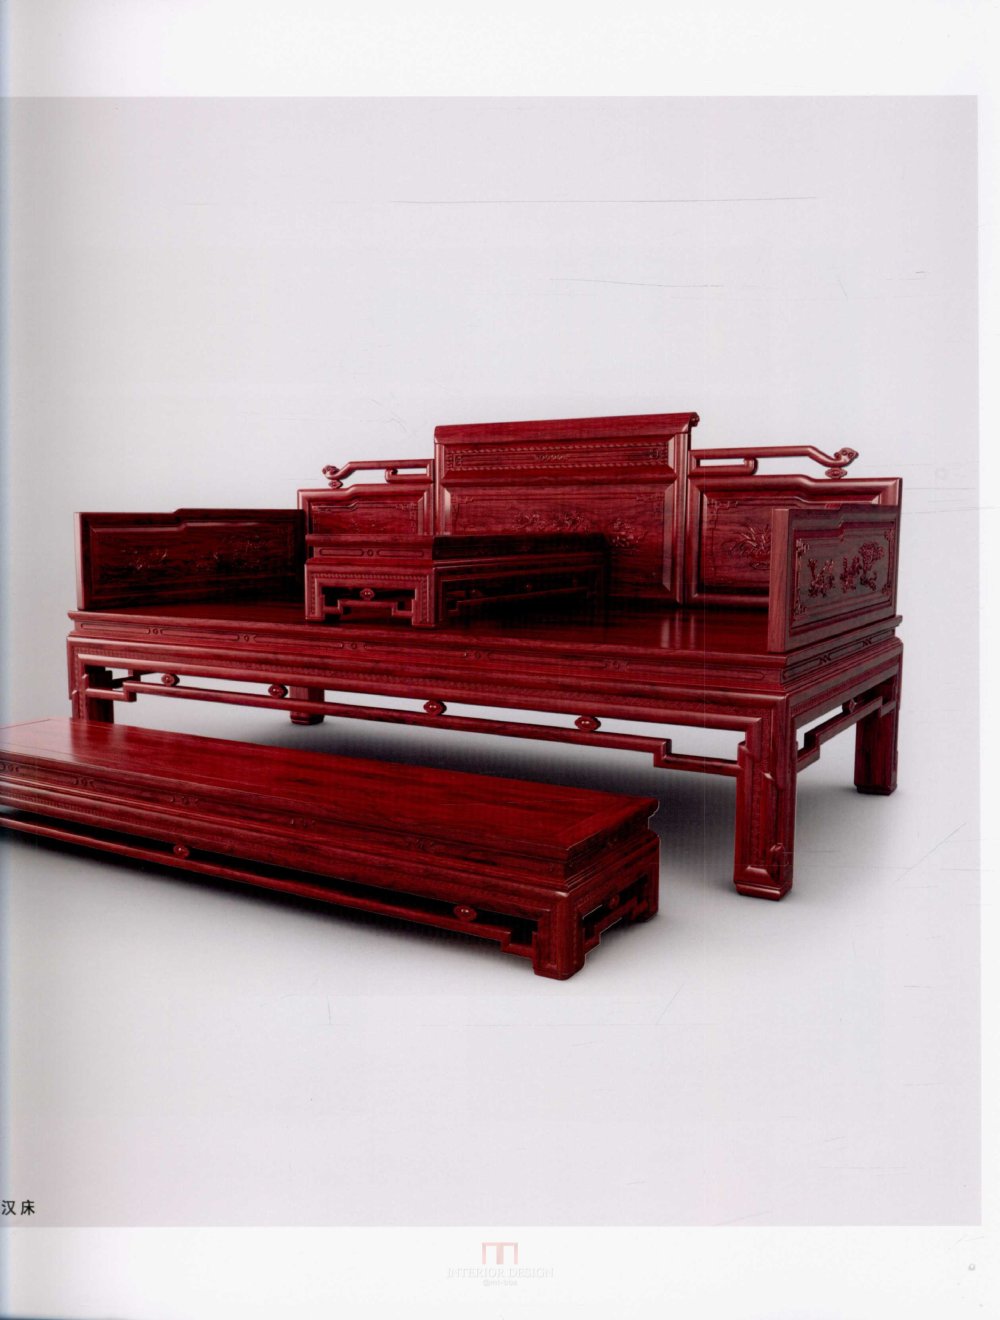 中国红木家具设计制作上卷_kobe 0021.jpg